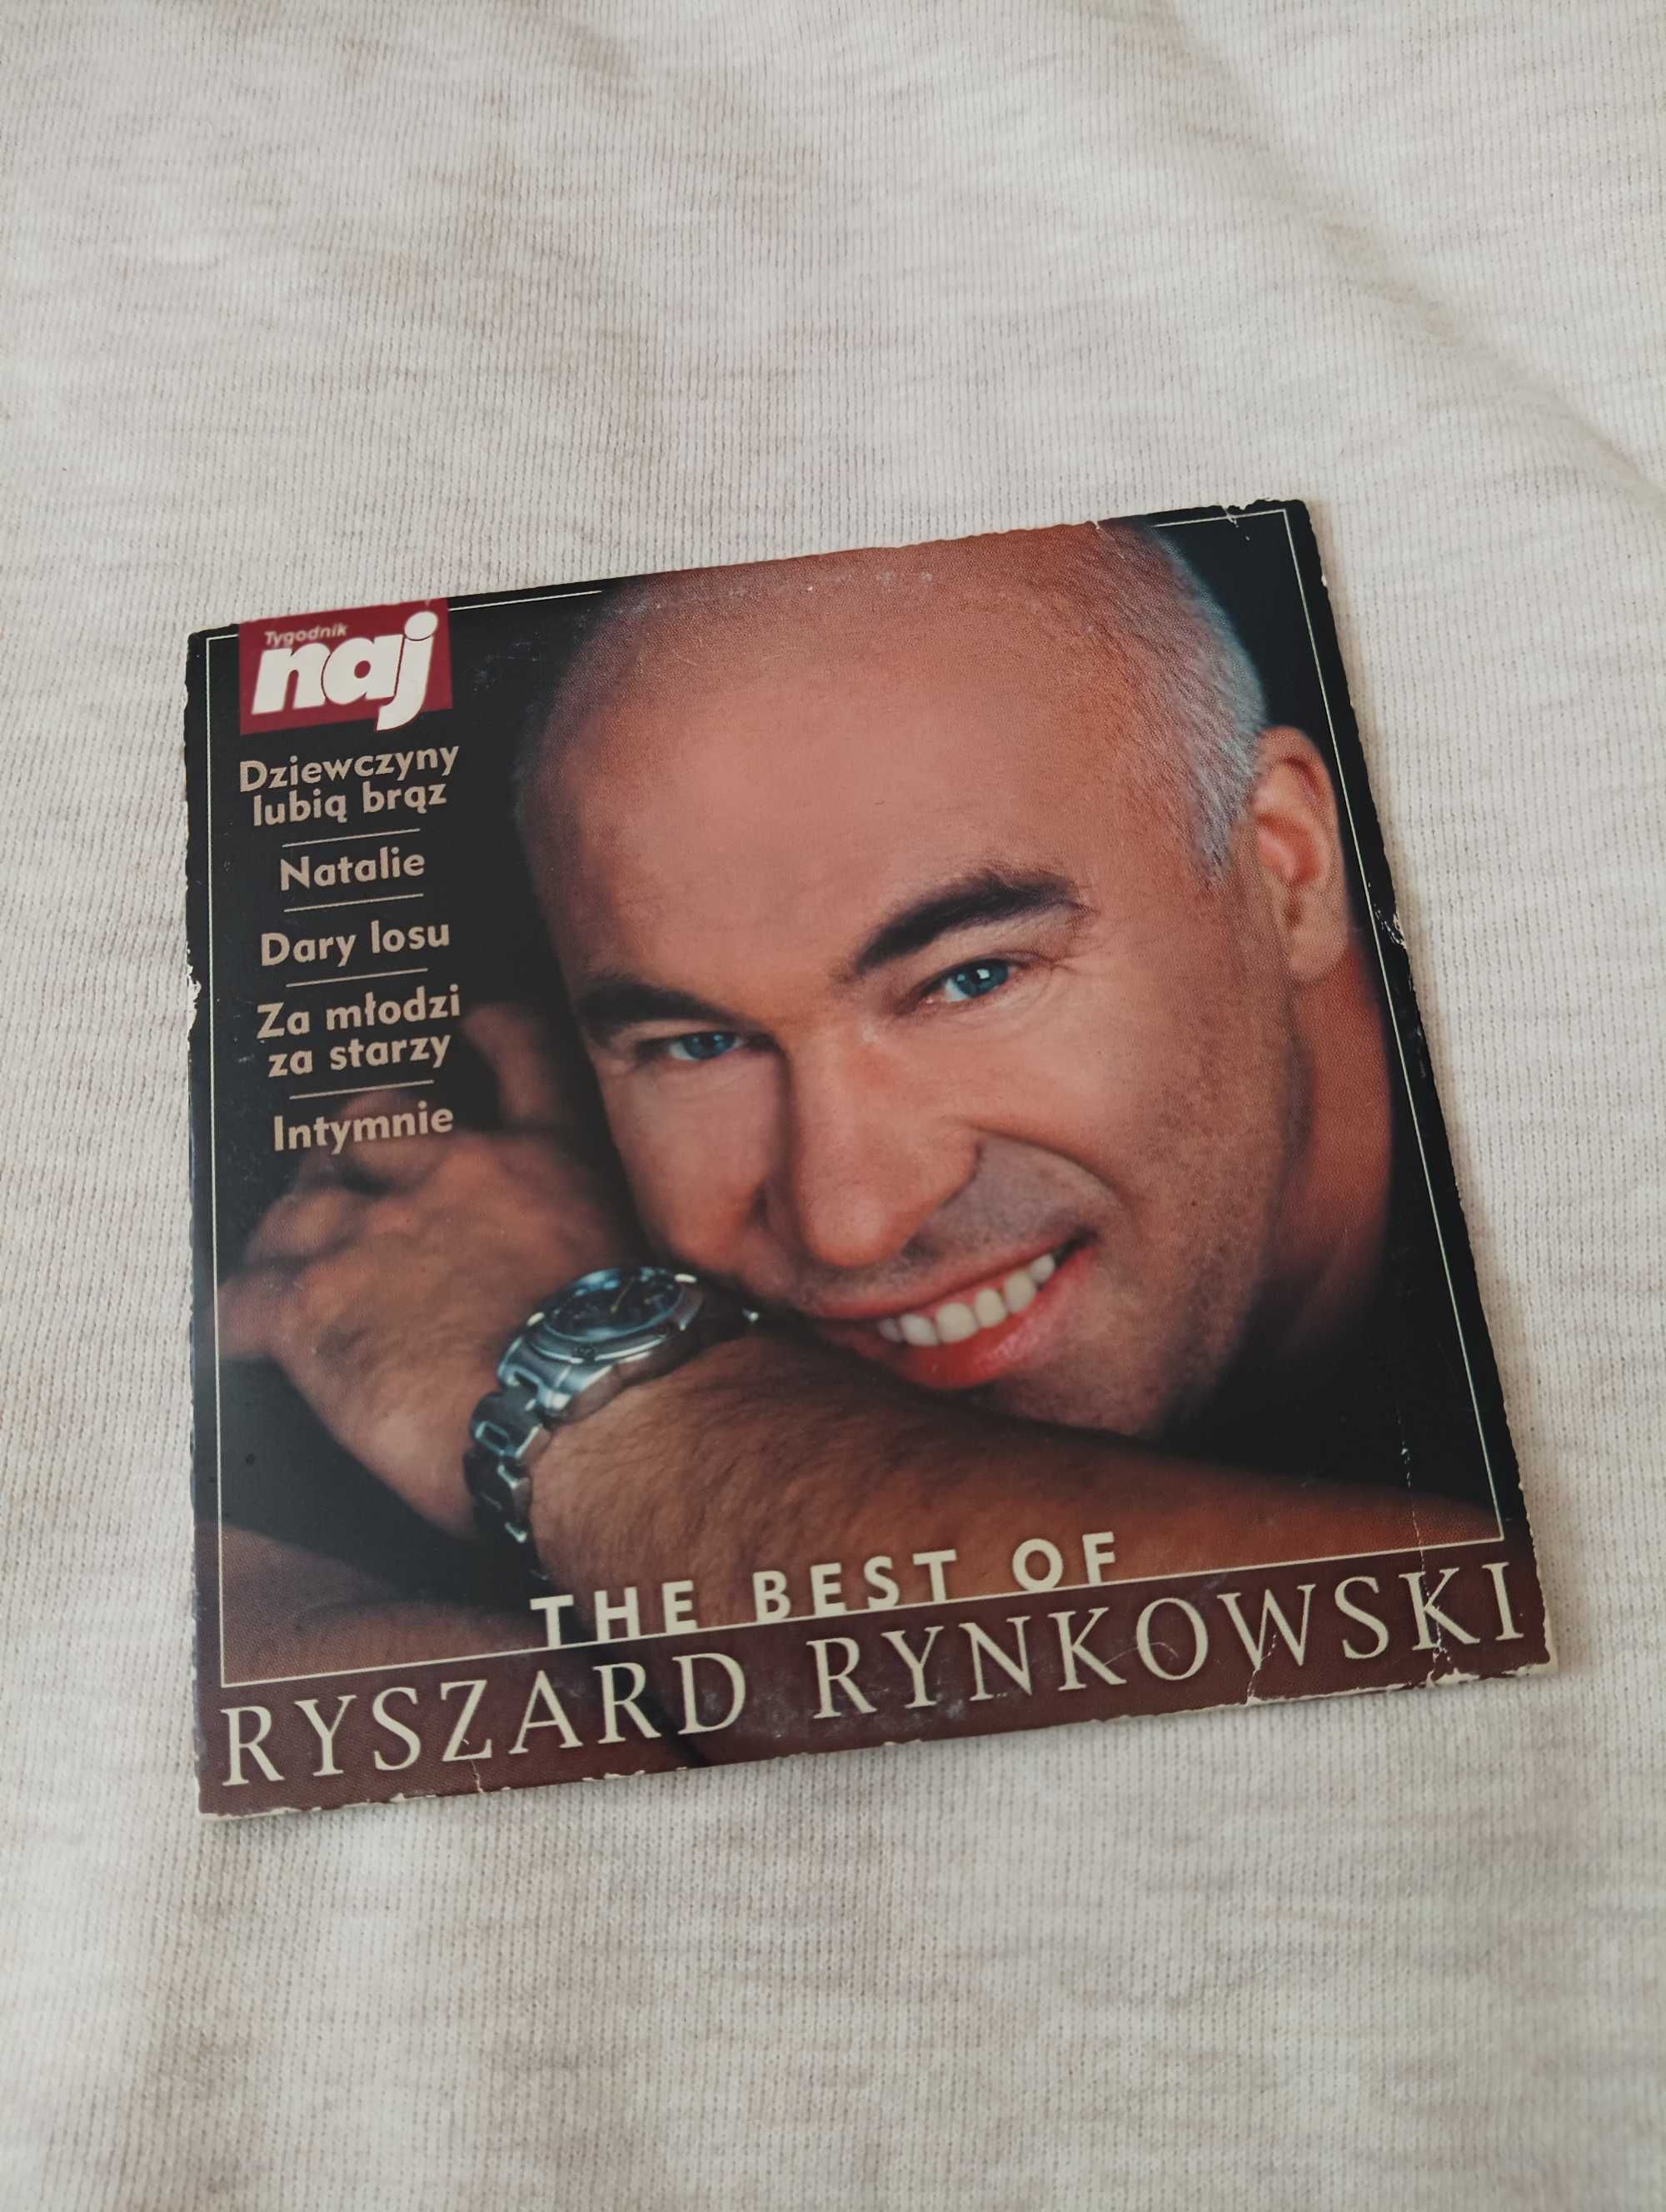 The Best of Ryszard Rynkowski